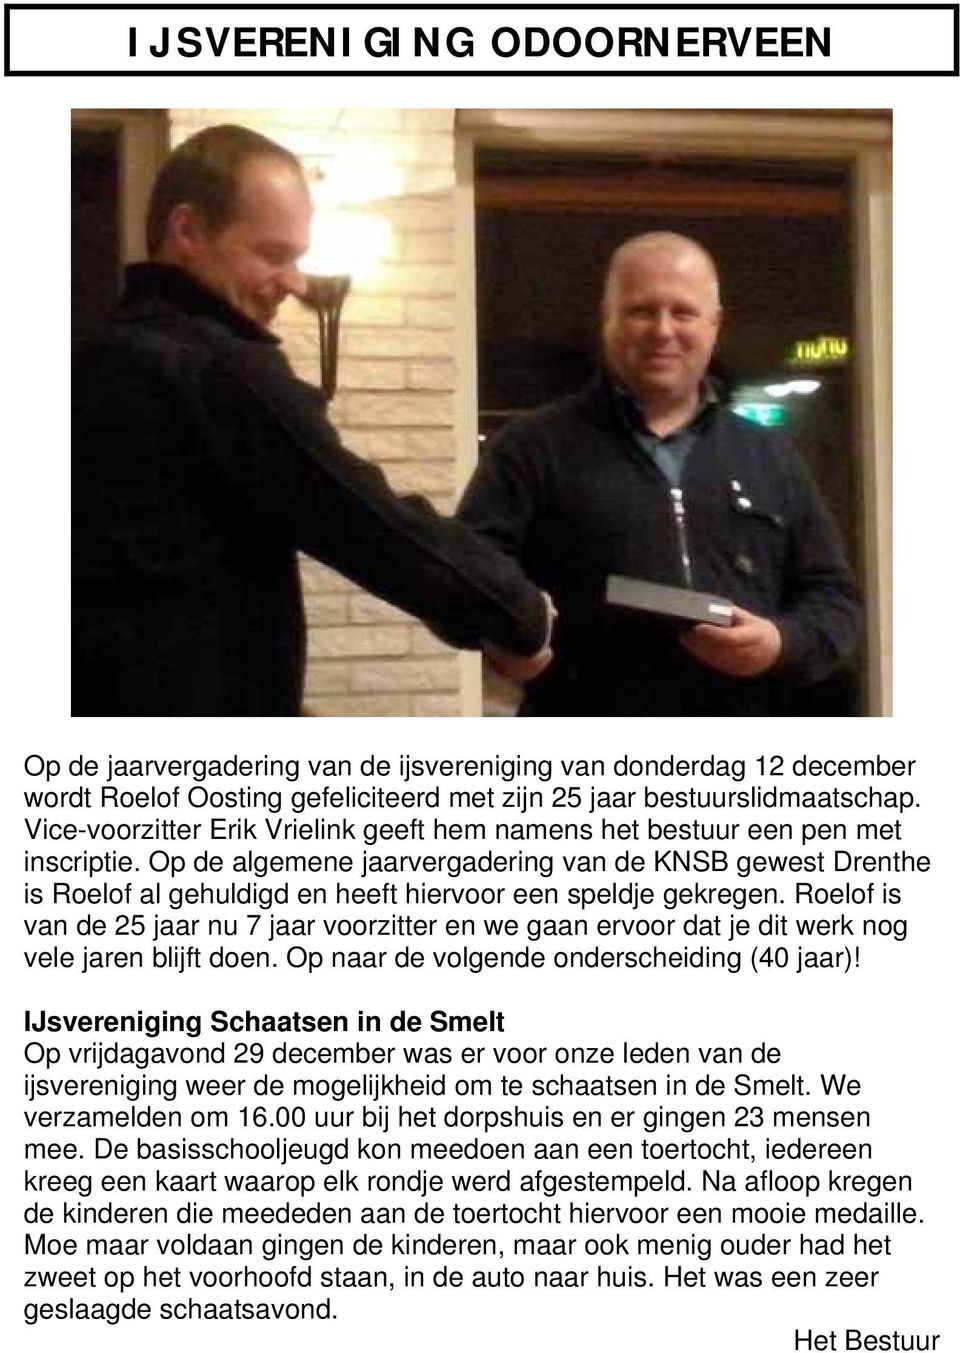 Op de algemene jaarvergadering van de KNSB gewest Drenthe is Roelof al gehuldigd en heeft hiervoor een speldje gekregen.